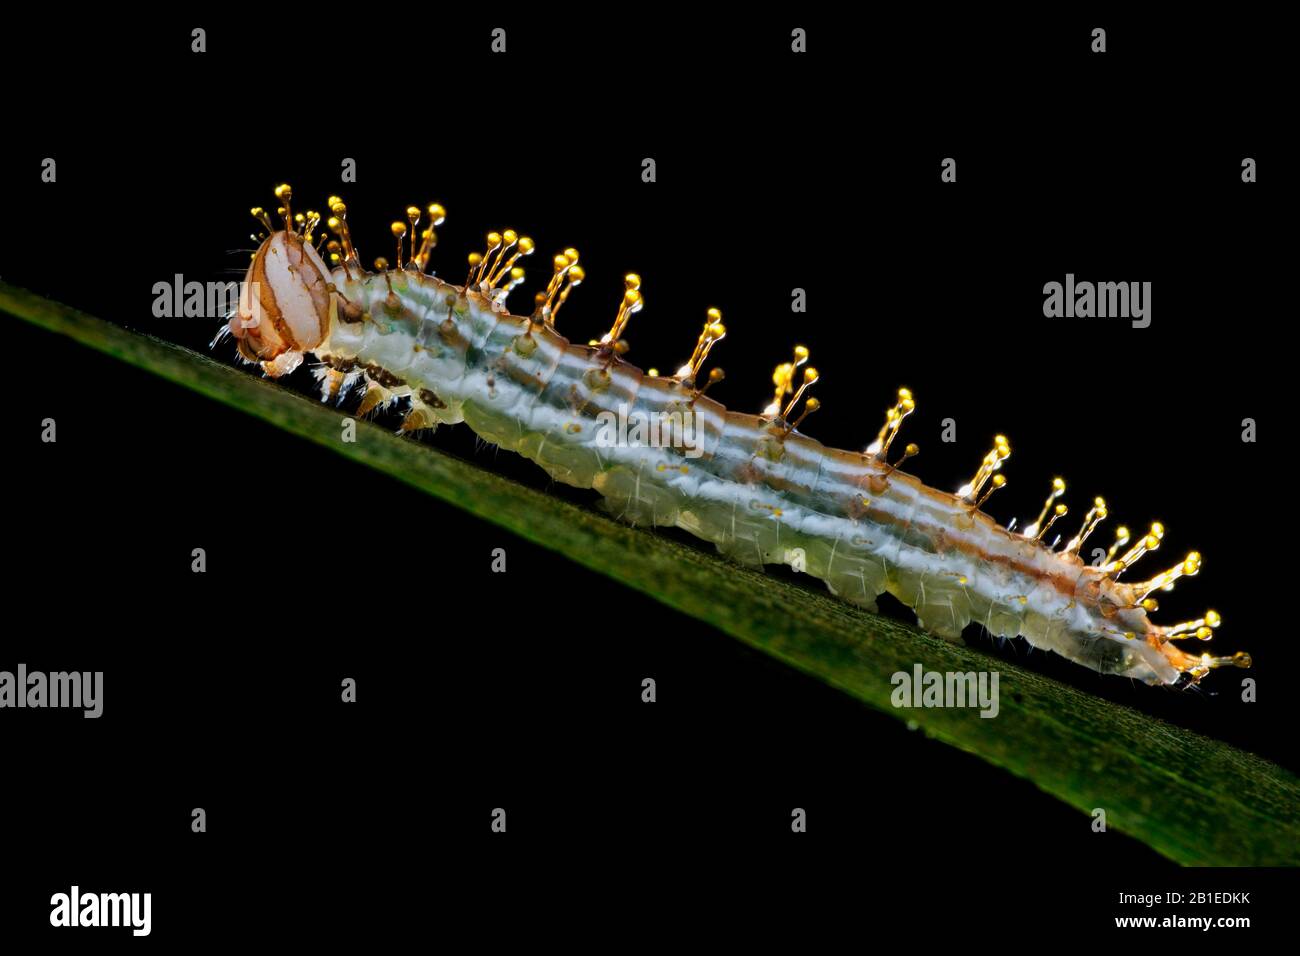 Quando distrurb, Pieridae Caterpillar secernono un fluido limpido e oleoso che si raccoglie in gocce sulle punte dei suoi capelli come difesa chimica (Singapore) Foto Stock